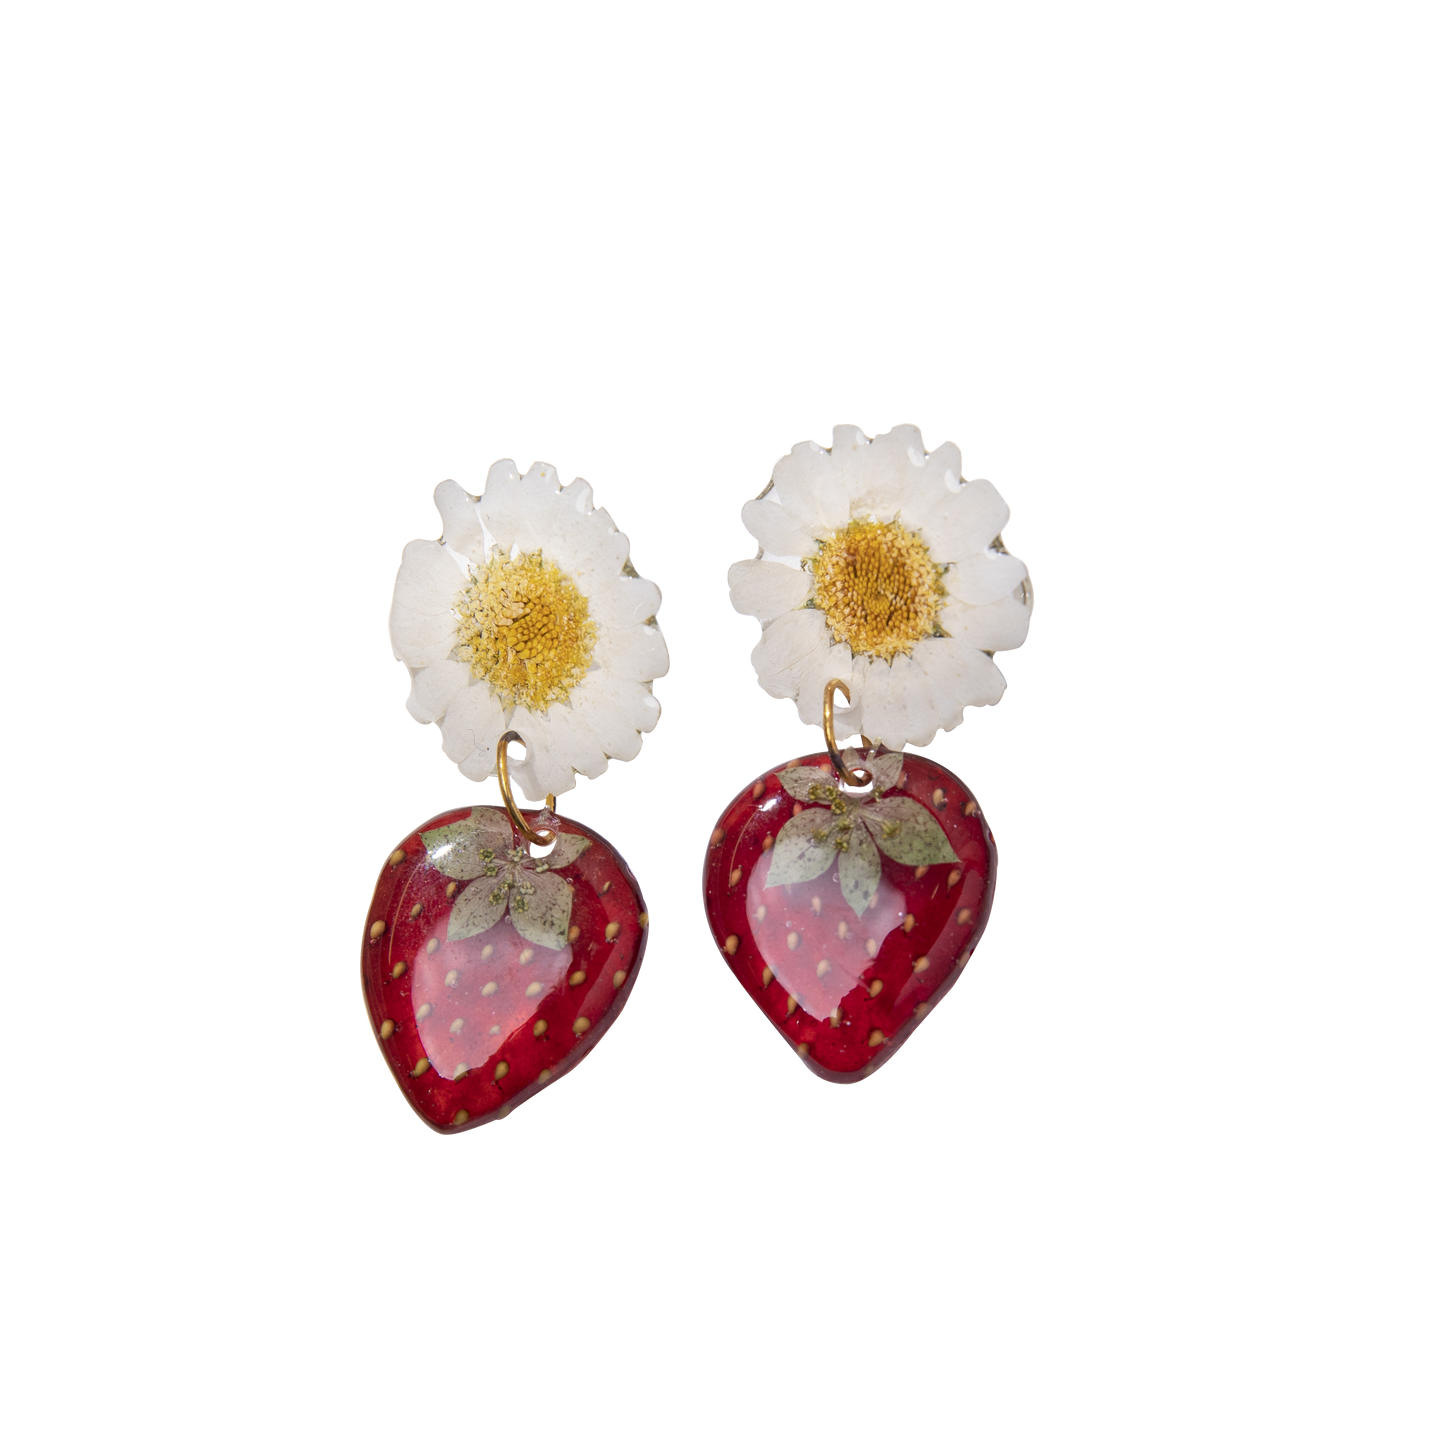 Strawberry & Daisy Sterling Silver Earrings